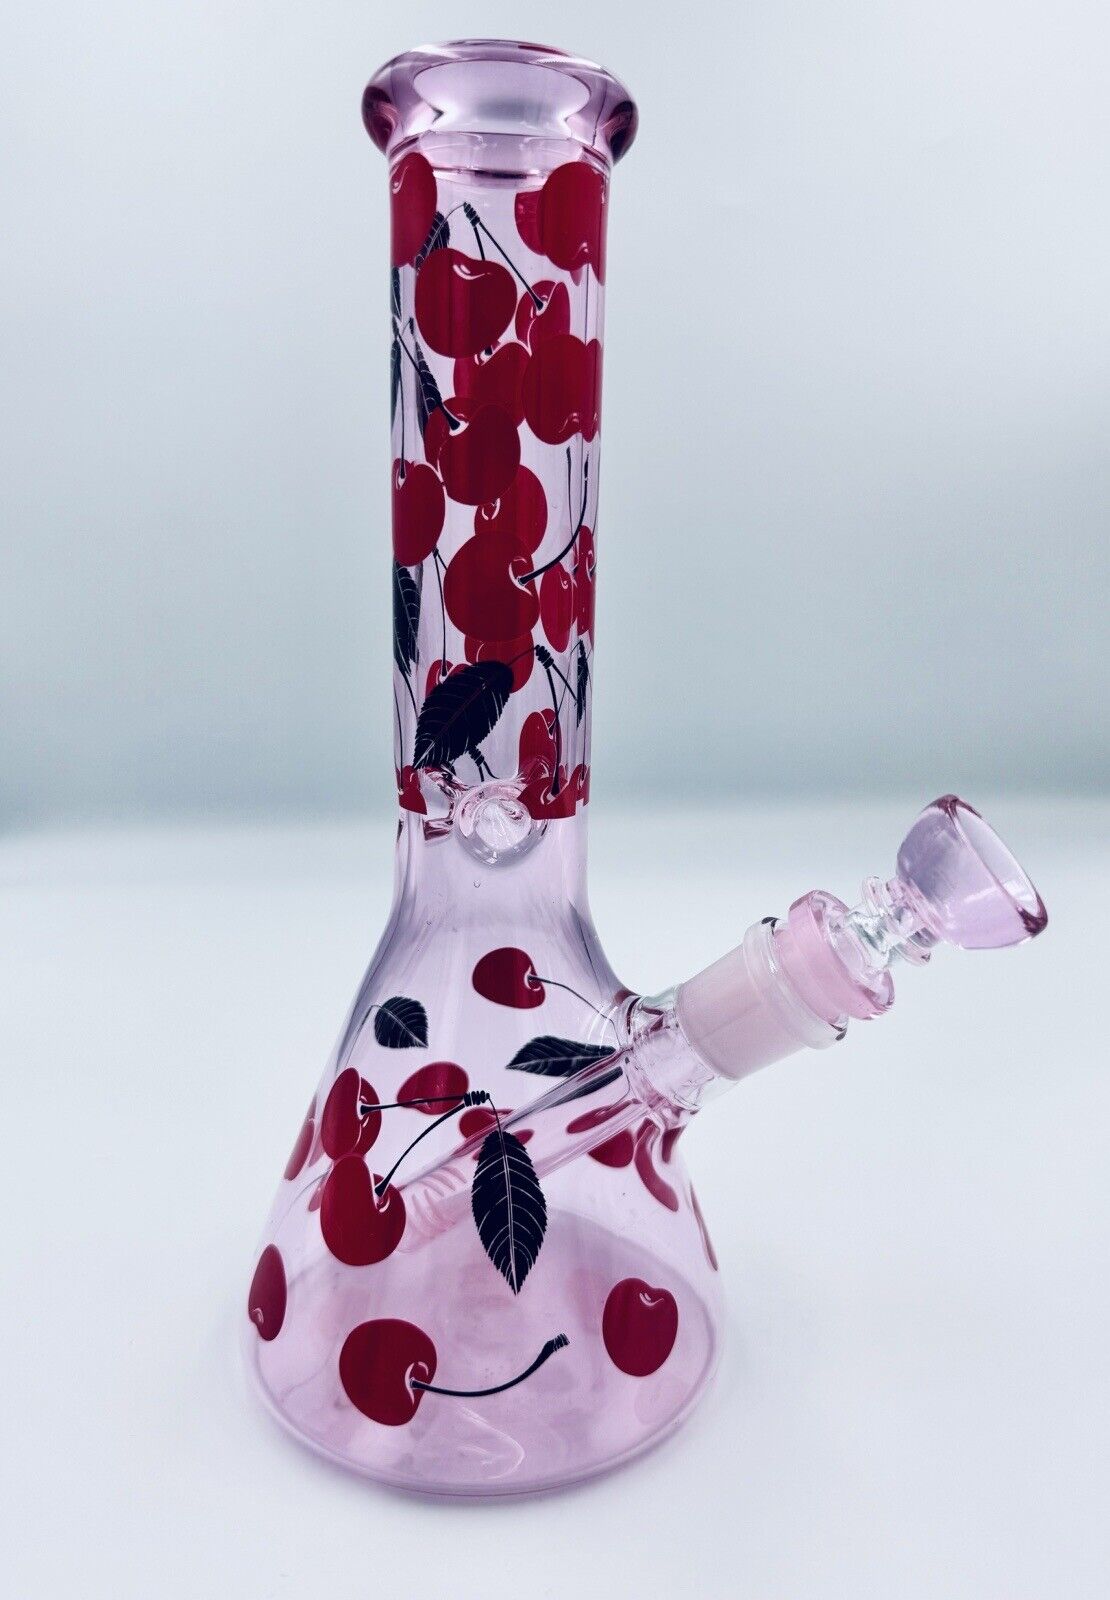 10” Pink Cherry bong Pipes Glass Hookah Water Pipe Tobacco Smoking Beaker Base